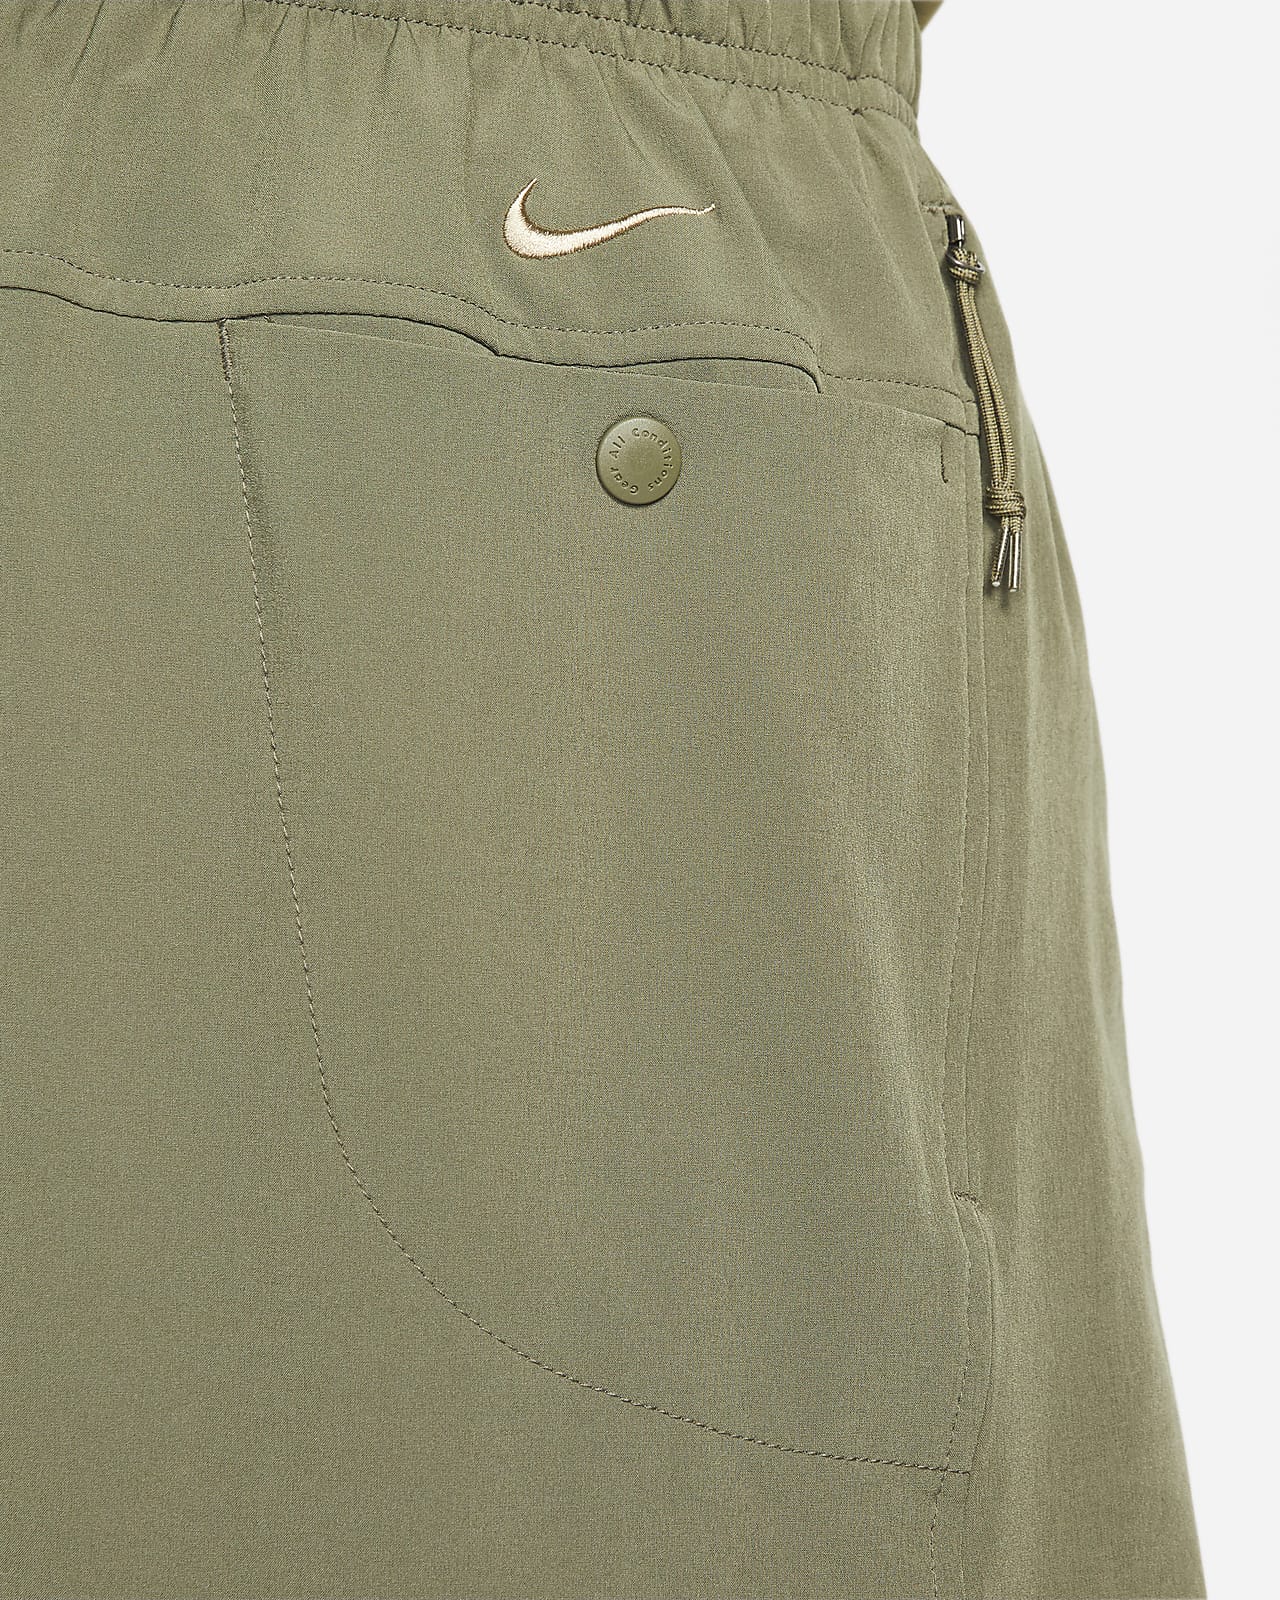 Nike ACG Dri-FIT 'New Sands' Men's Shorts. Nike RO